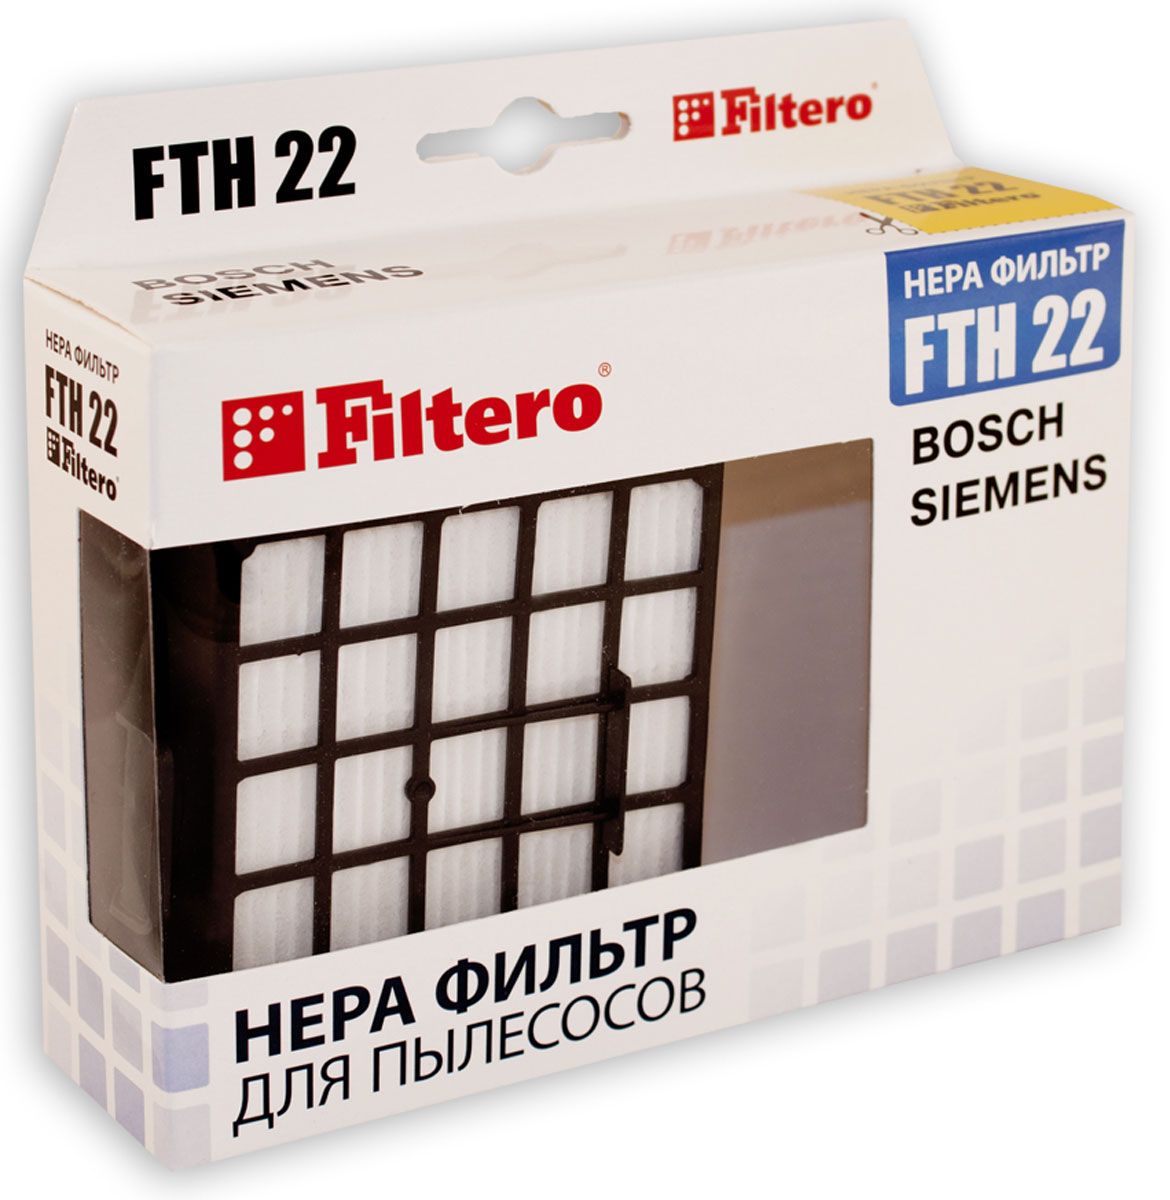 НЕРА-фильтр Filtero FTH 22 (1фильт.) фильтры для пылесоса philips fc8477 hepa поролоновый